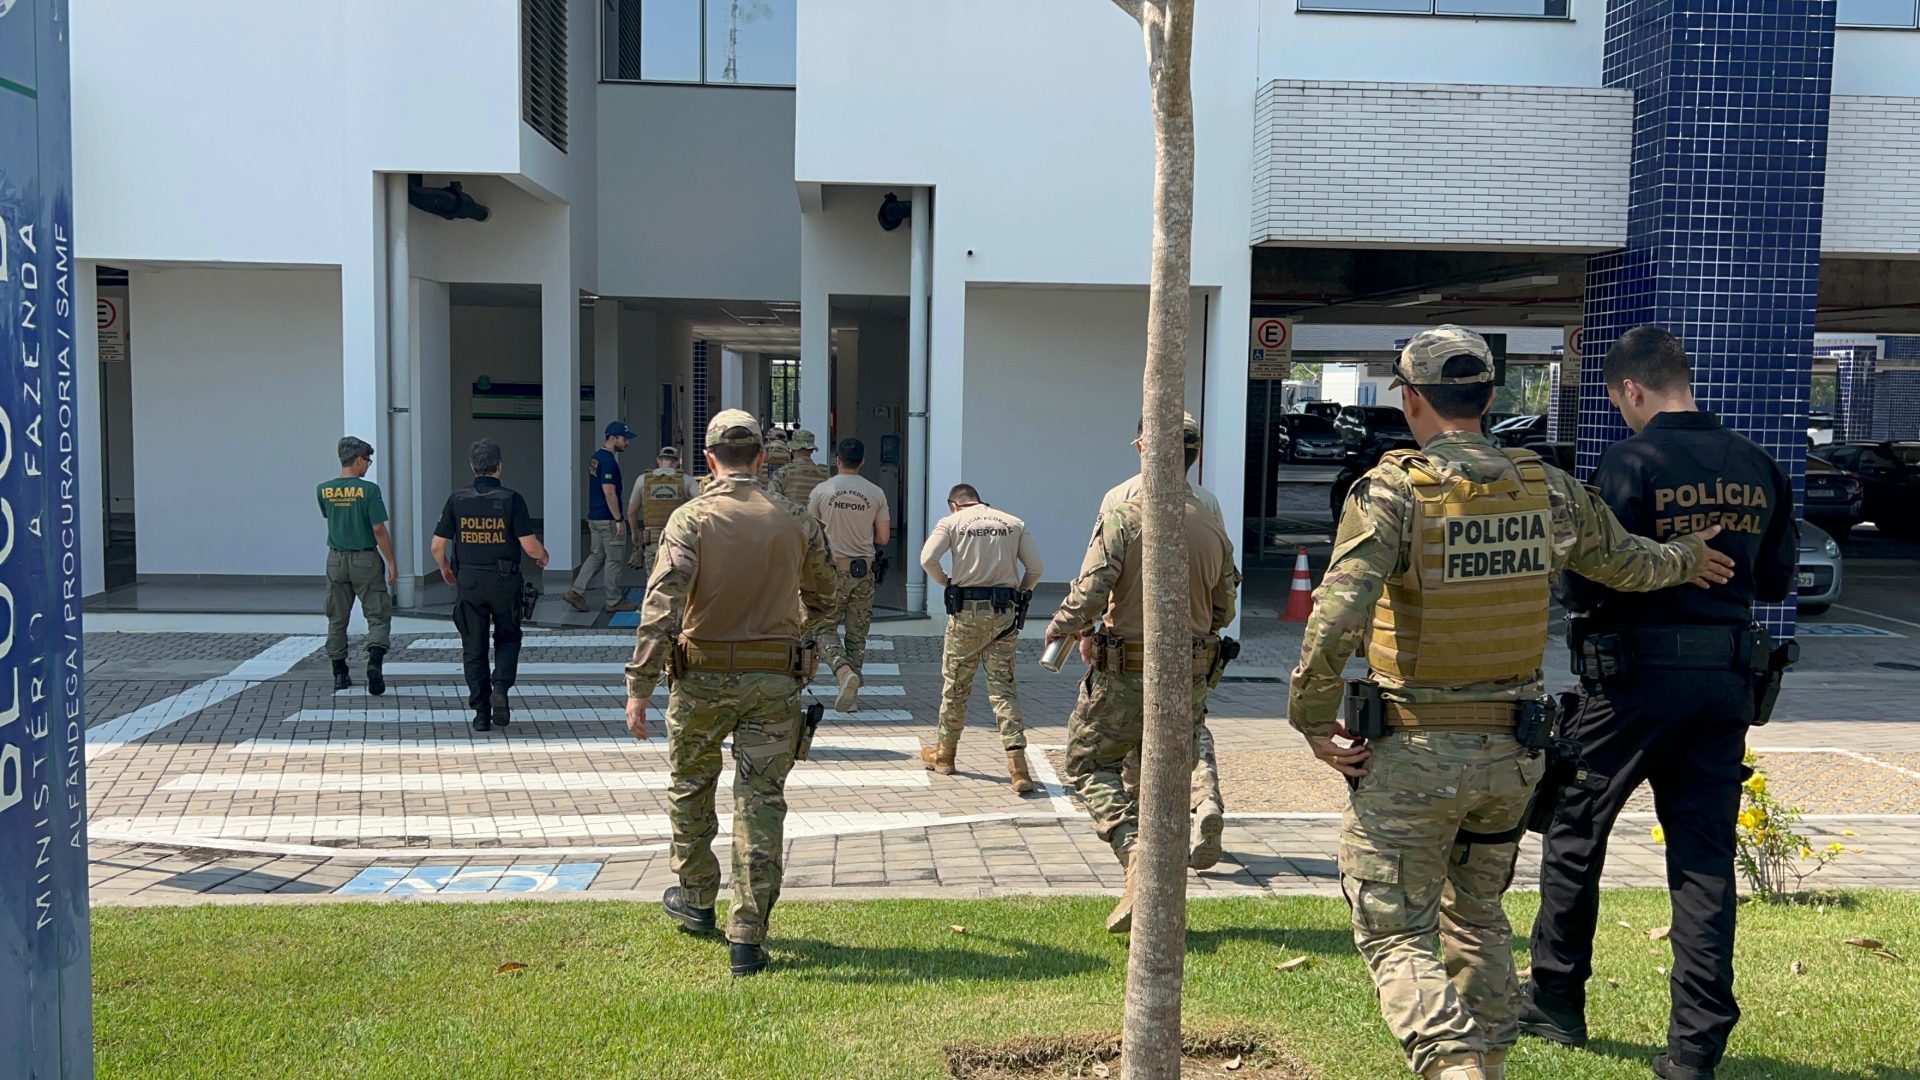 Polícia Federal realiza operação de fiscalização no Porto de Manaus